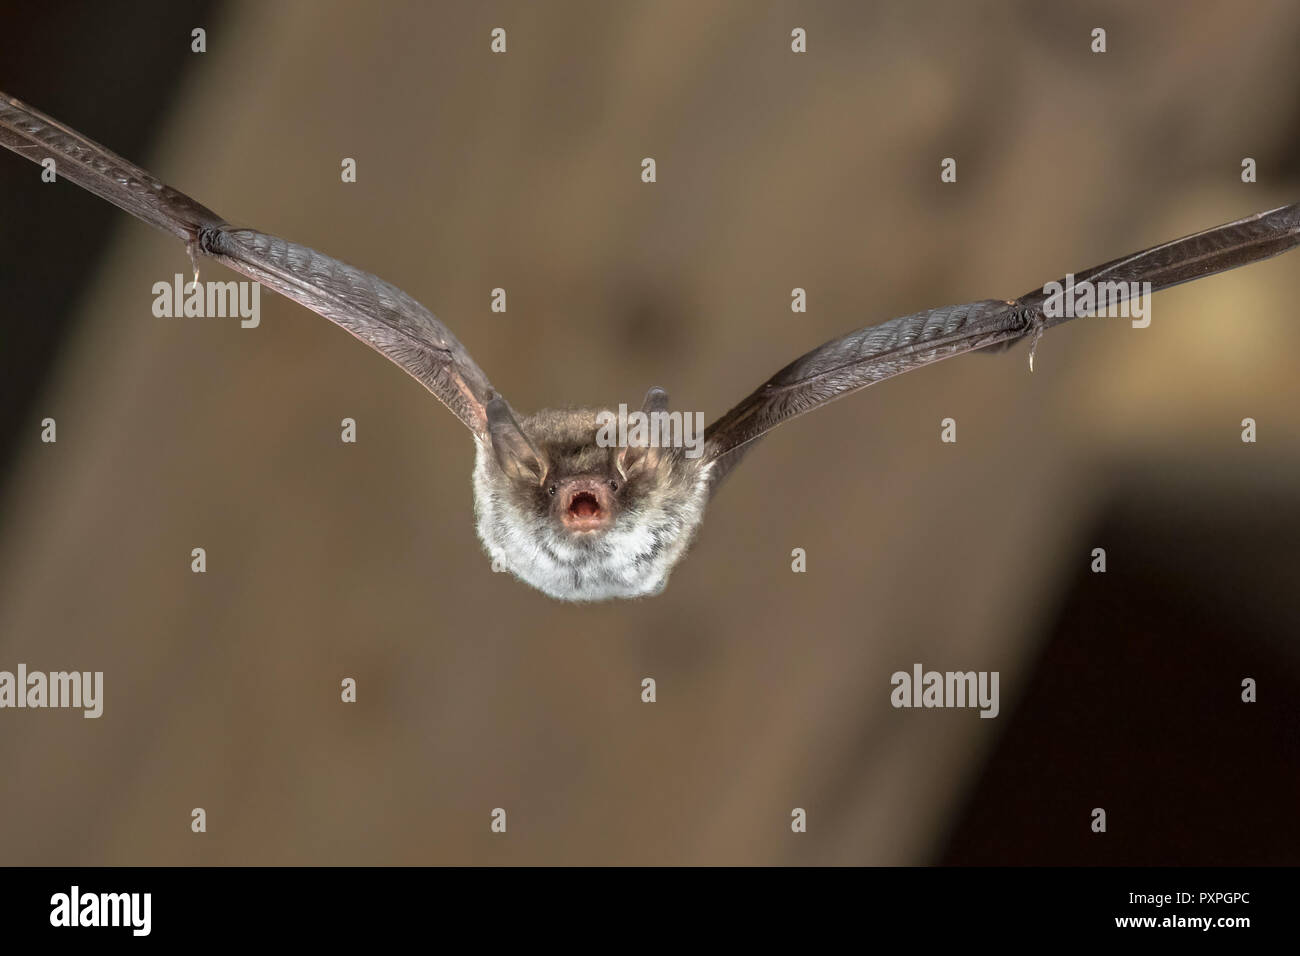 Rare Natterer's bat (Myotis nattereri) flying on church attic with distinctive white belly Stock Photo